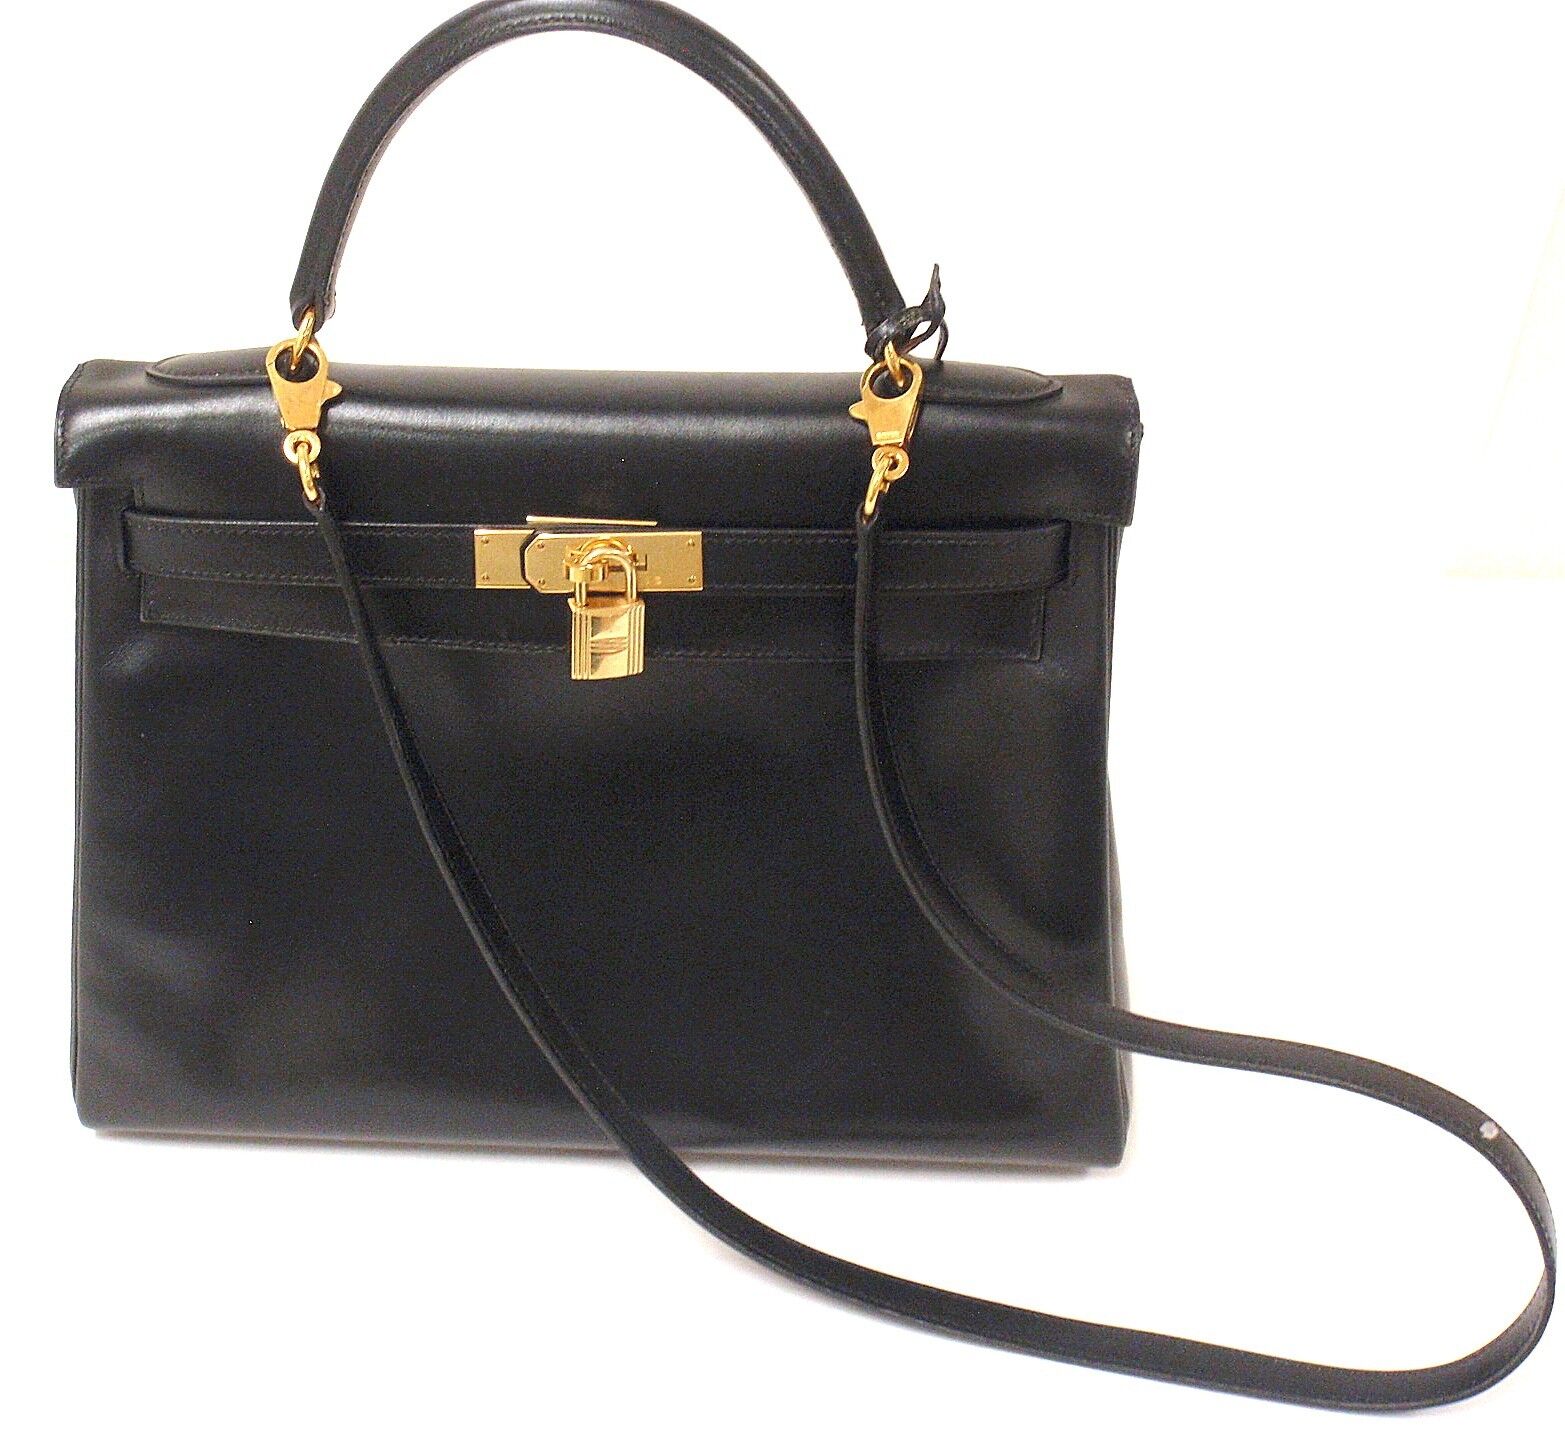 Is a vintage hermes kelly worth buying? : r/handbags